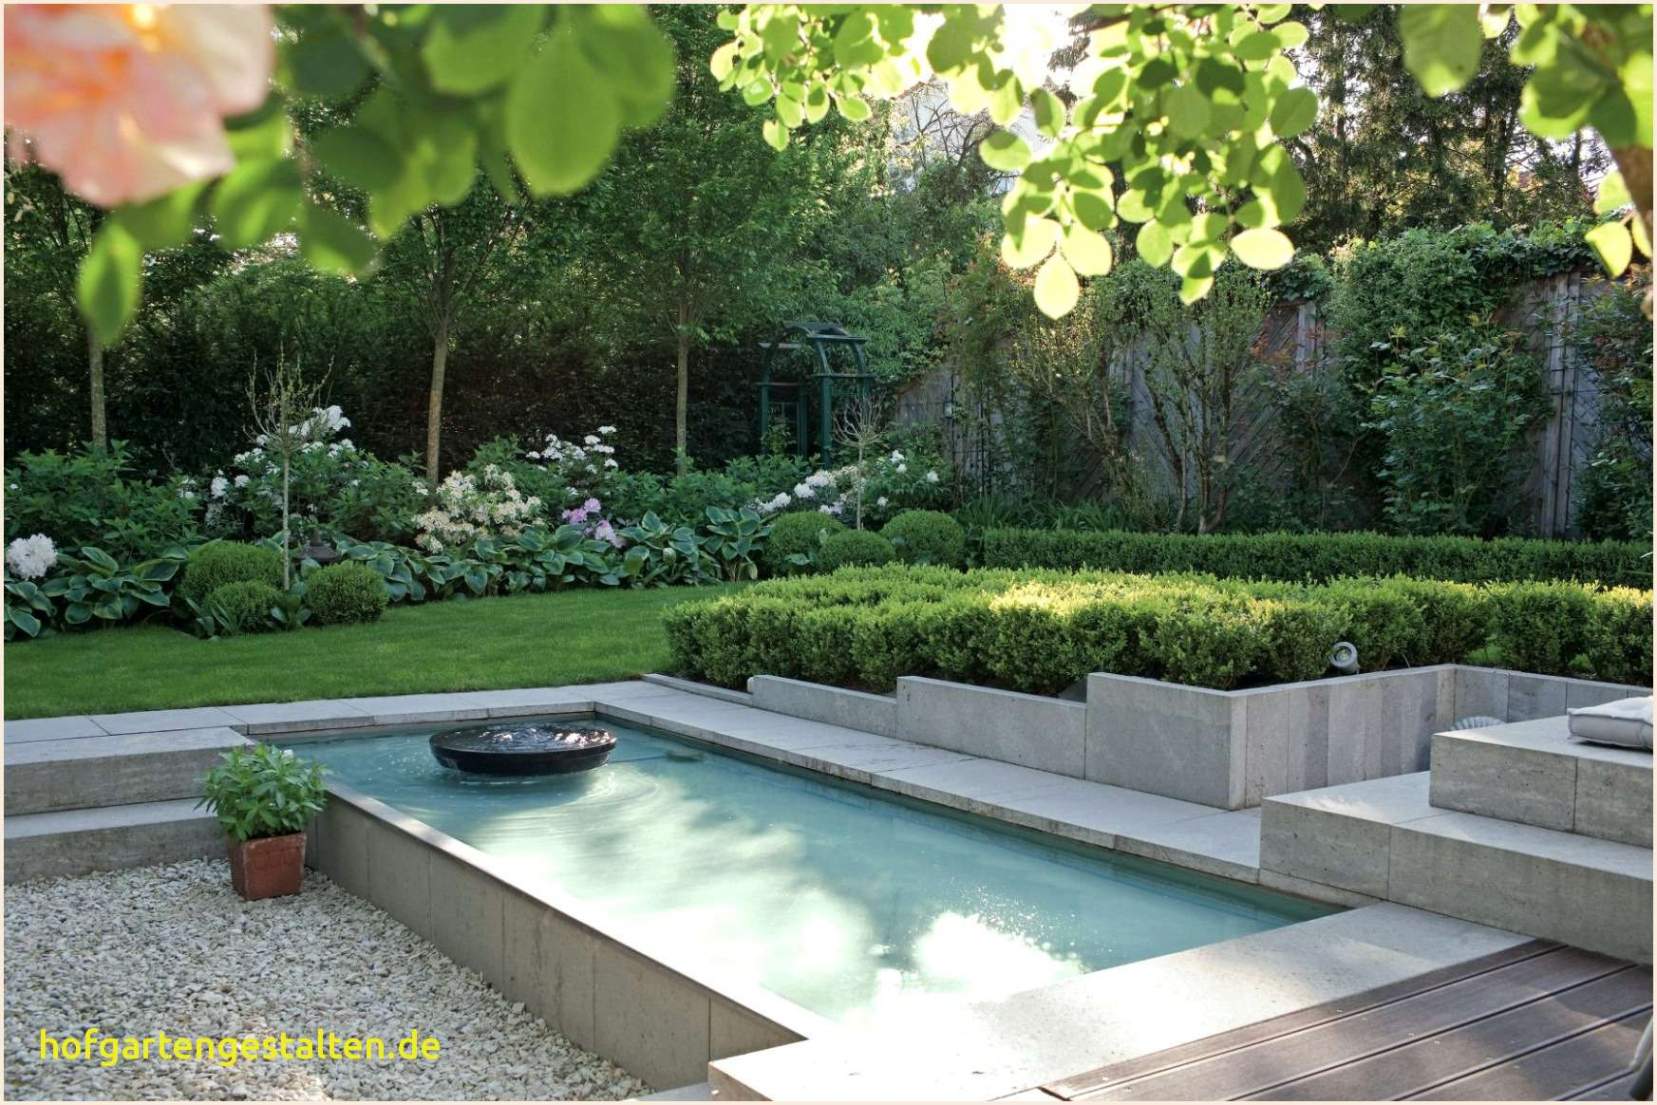 39 luxus springbrunnen garten traumgarten mit pool traumgarten mit pool